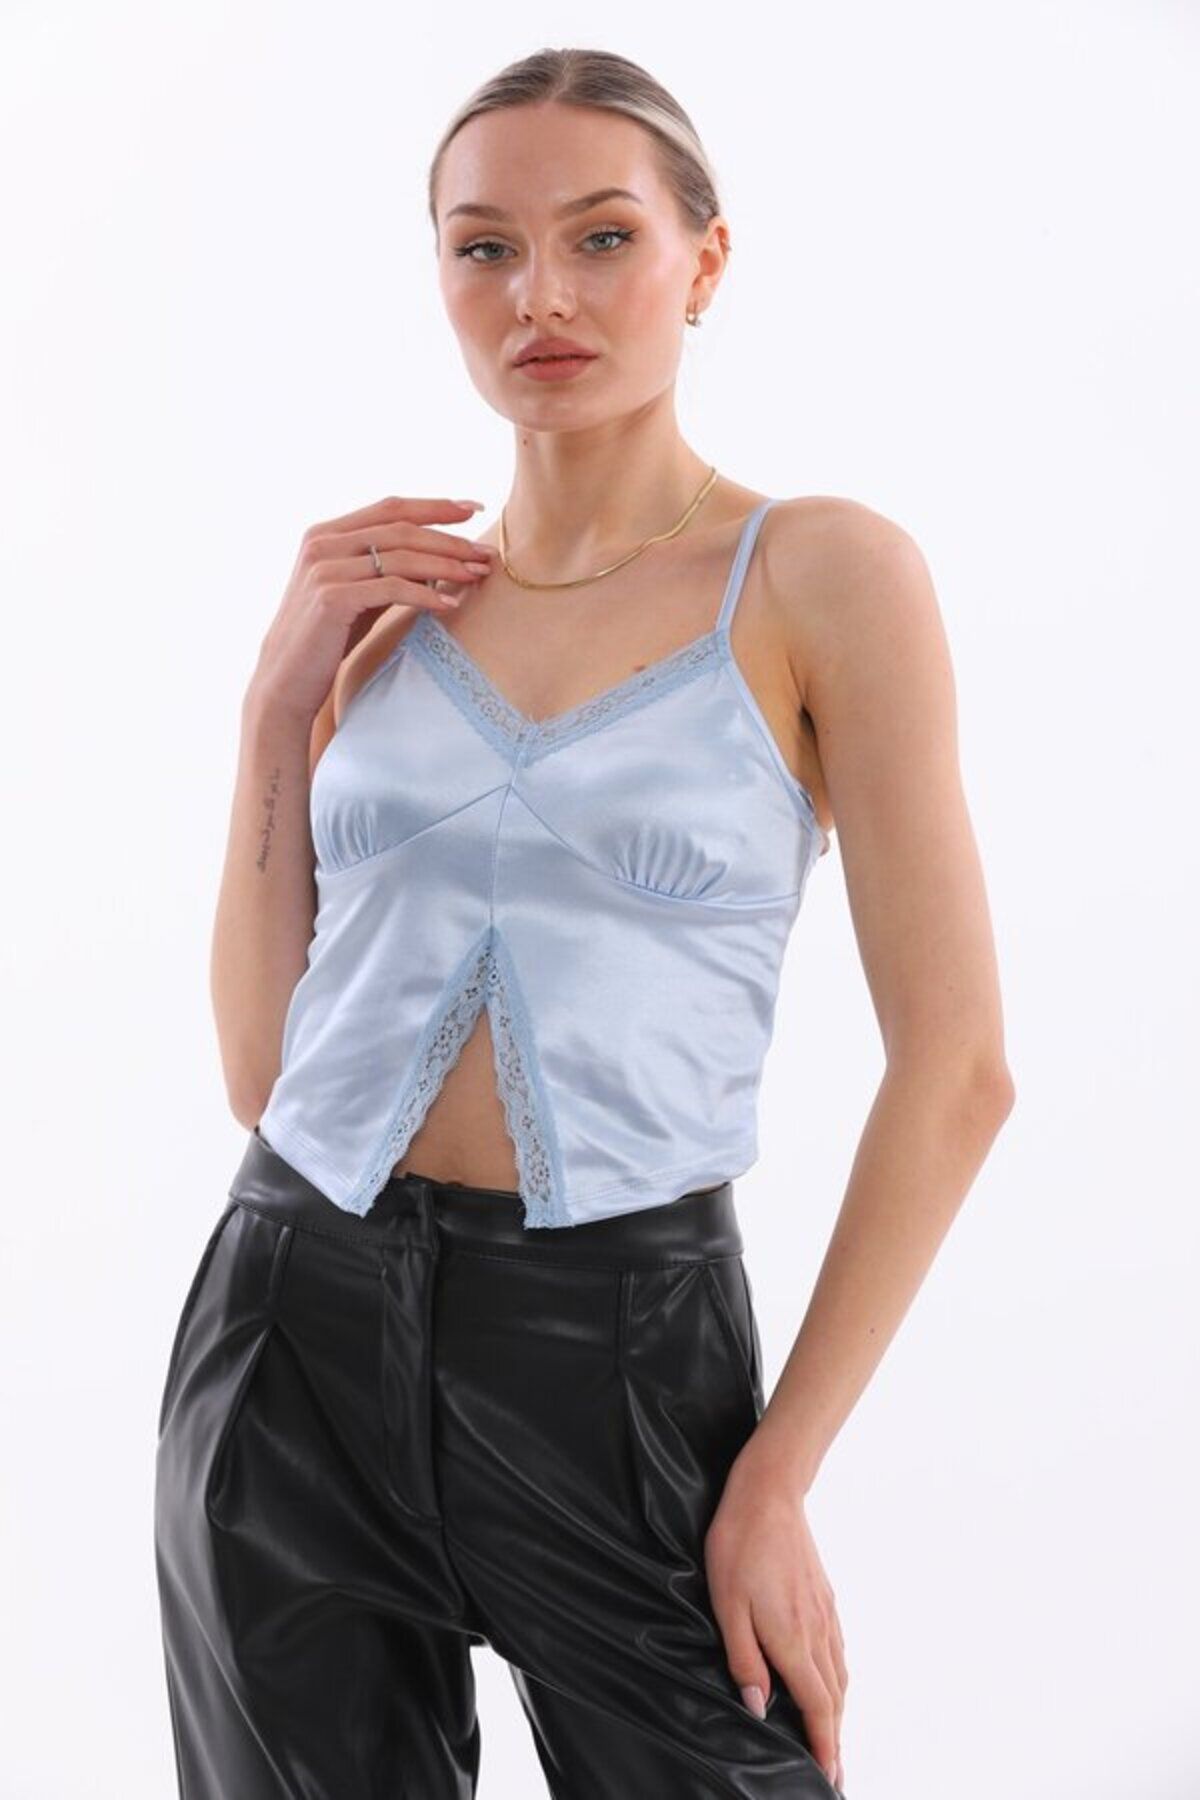 MAMAYAGA Kadın Askılı Saten Görünüm Korse Dantel Detay Asimetrik Kesim V Yaka Tasarım Crop Top Büstiyer Bluz